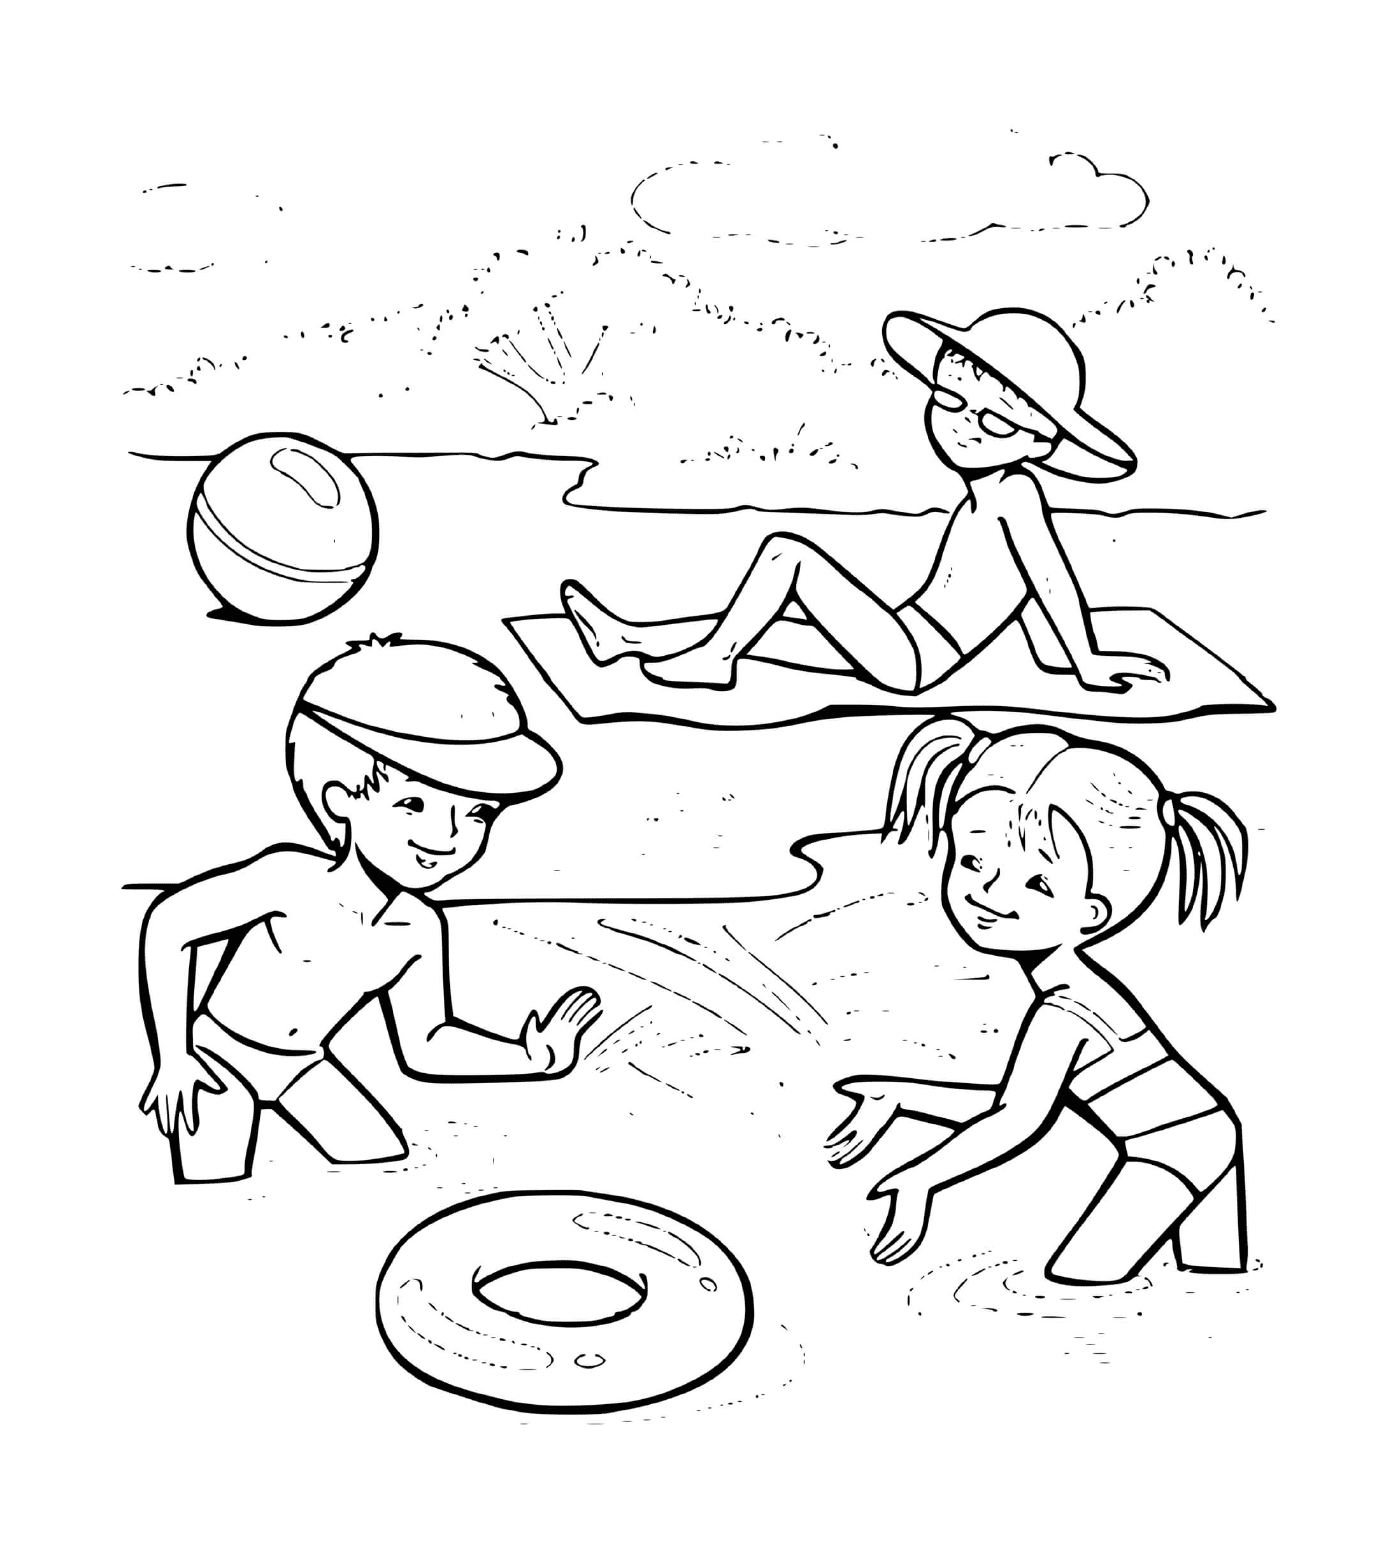  Kinder spielen am Strand 